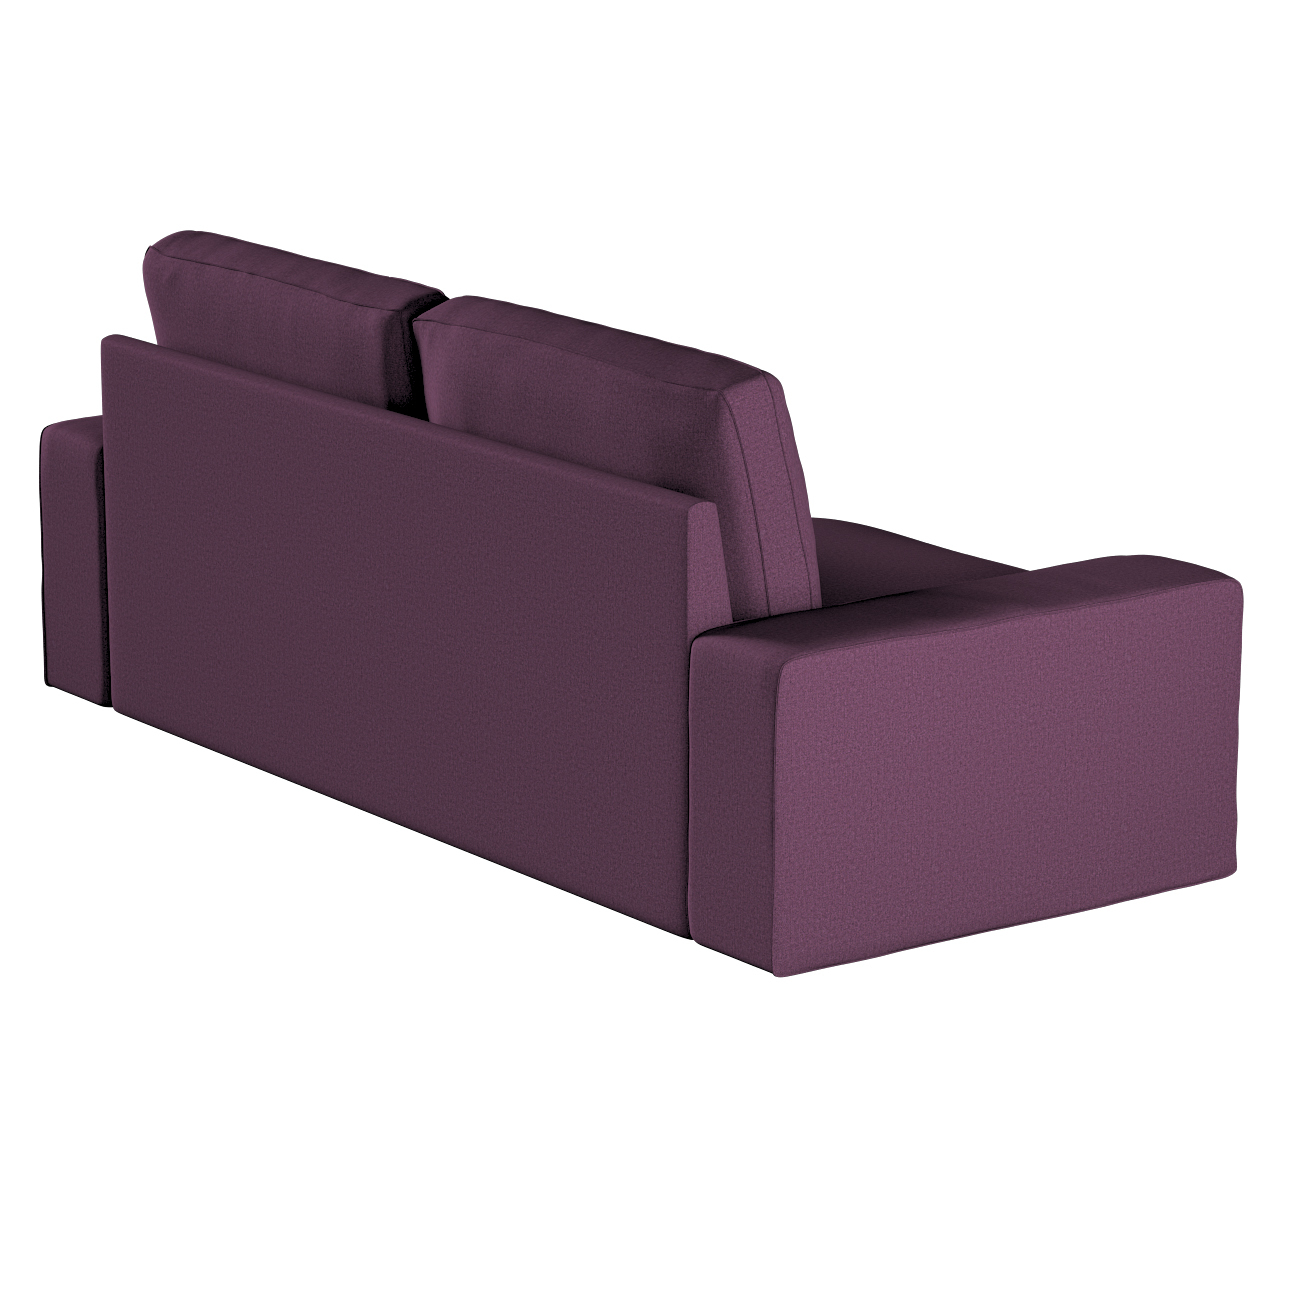 Bezug für Kivik 3-Sitzer Sofa, pflaume, Bezug für Sofa Kivik 3-Sitzer, Livi günstig online kaufen